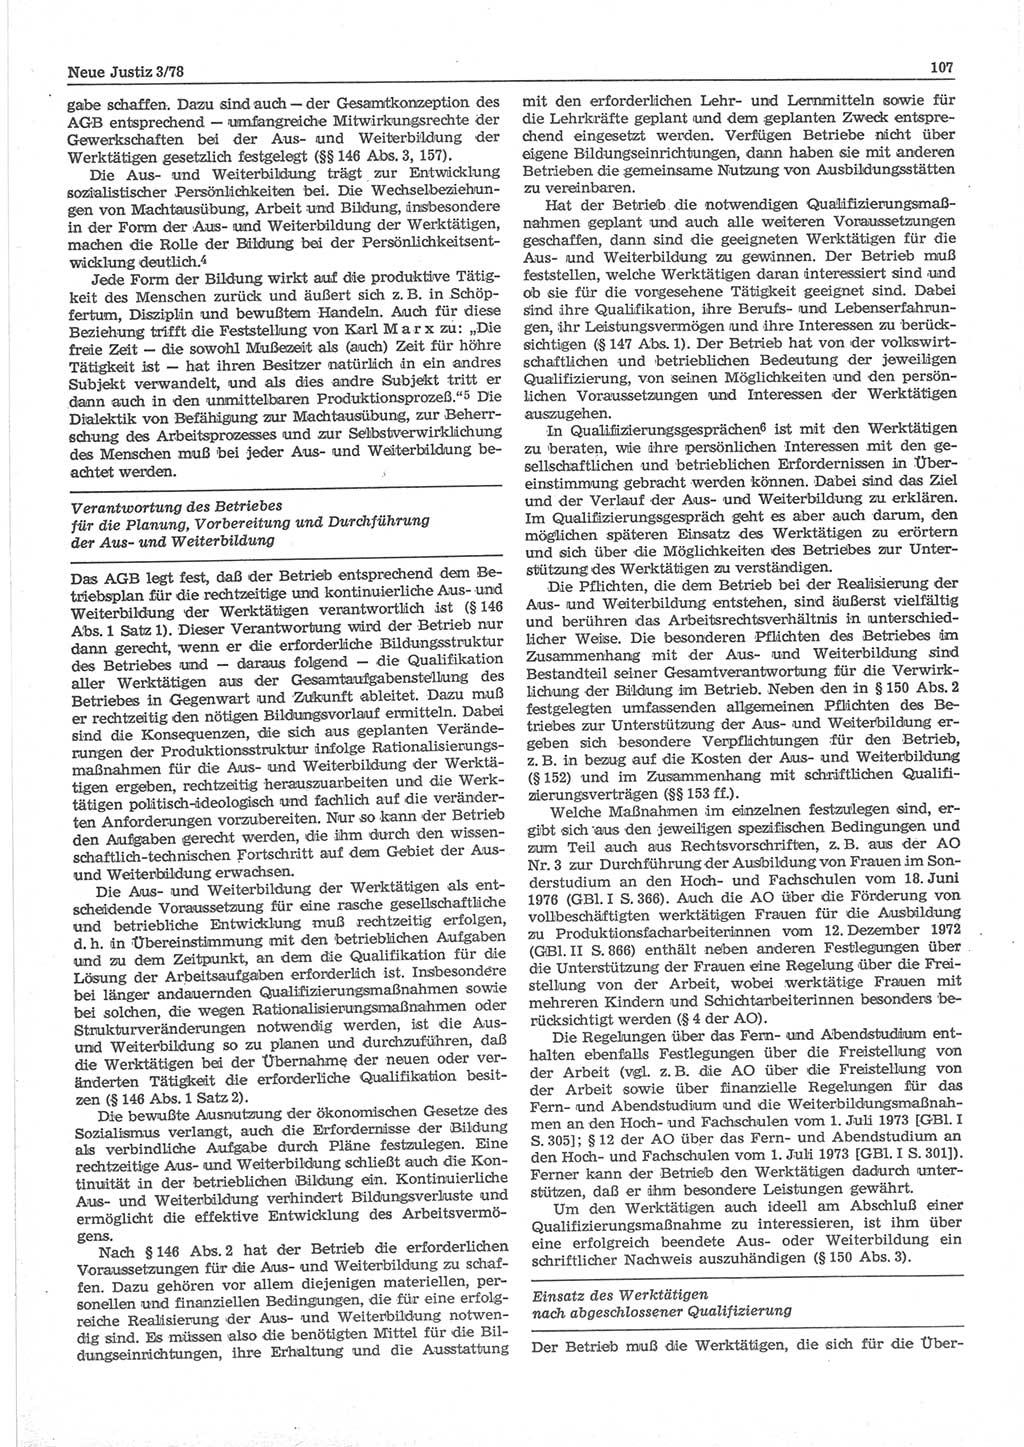 Neue Justiz (NJ), Zeitschrift für sozialistisches Recht und Gesetzlichkeit [Deutsche Demokratische Republik (DDR)], 32. Jahrgang 1978, Seite 107 (NJ DDR 1978, S. 107)